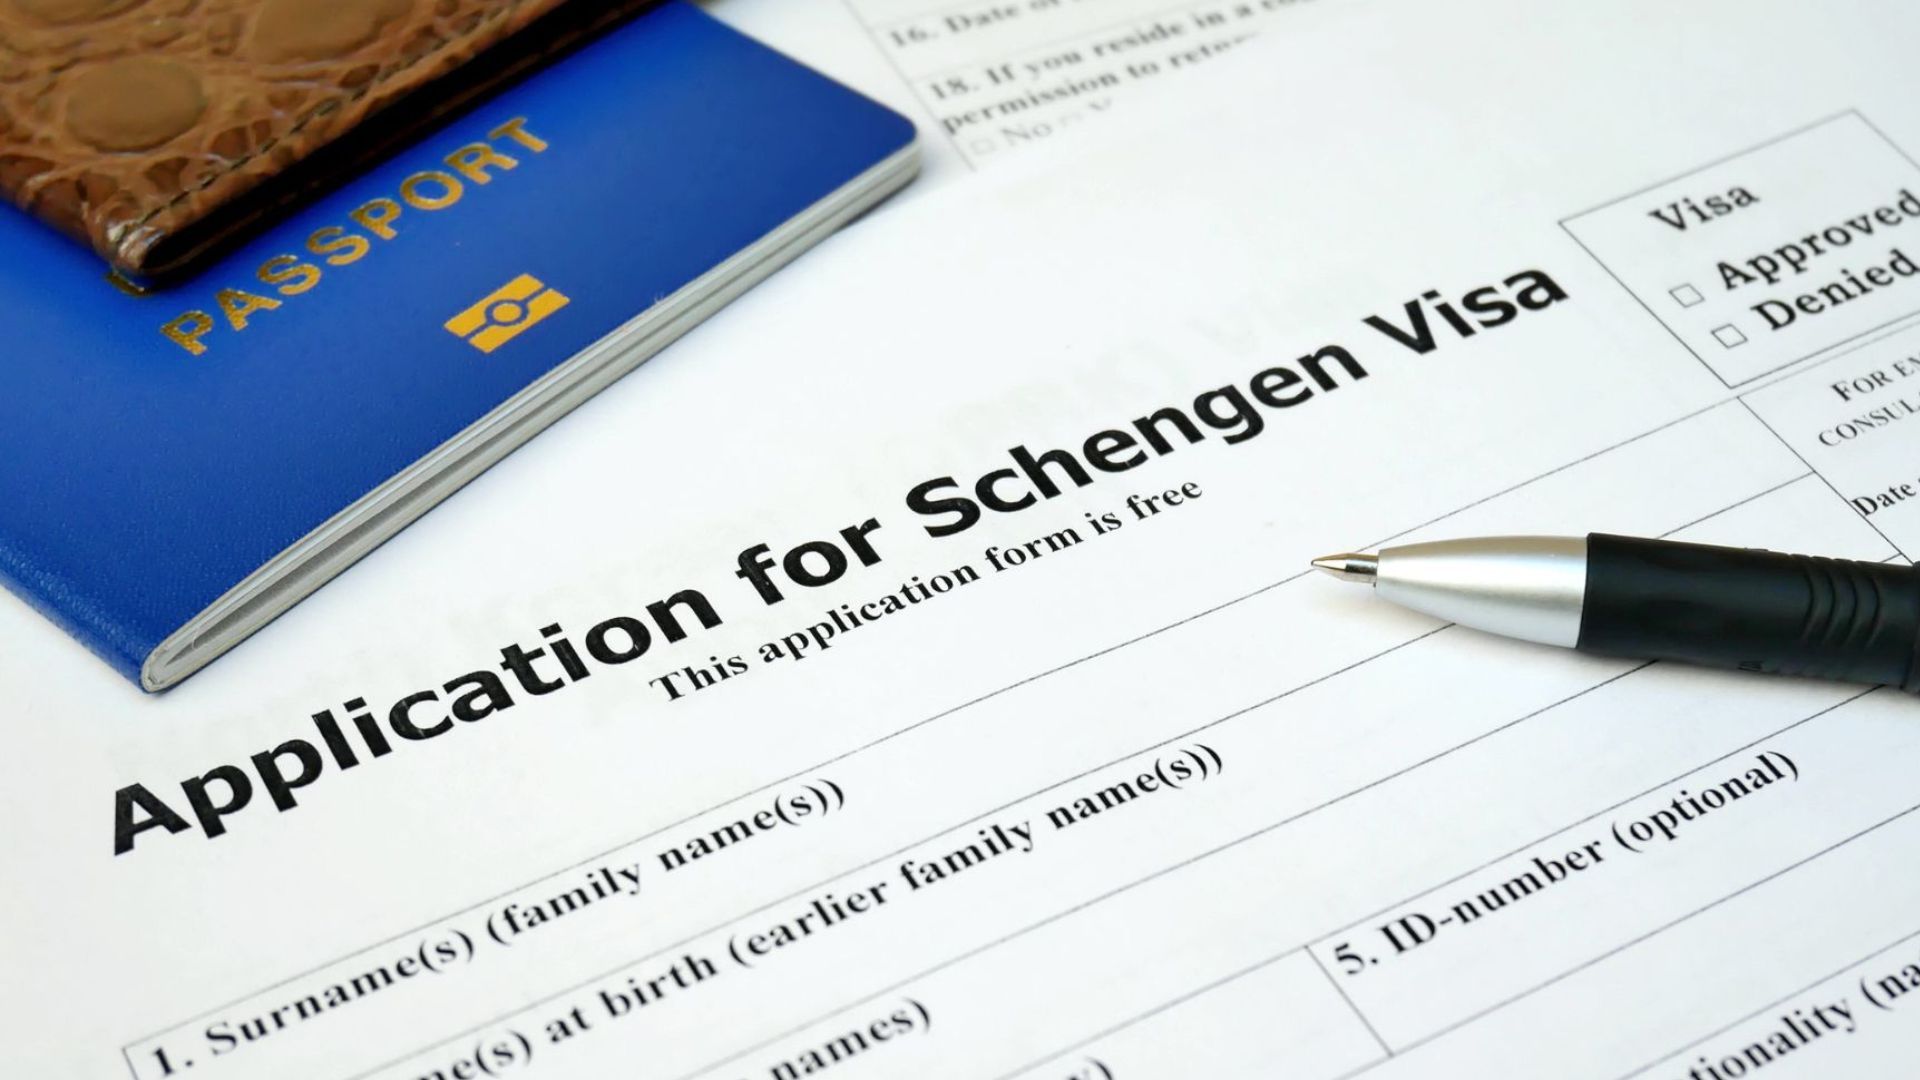 schengen business travel